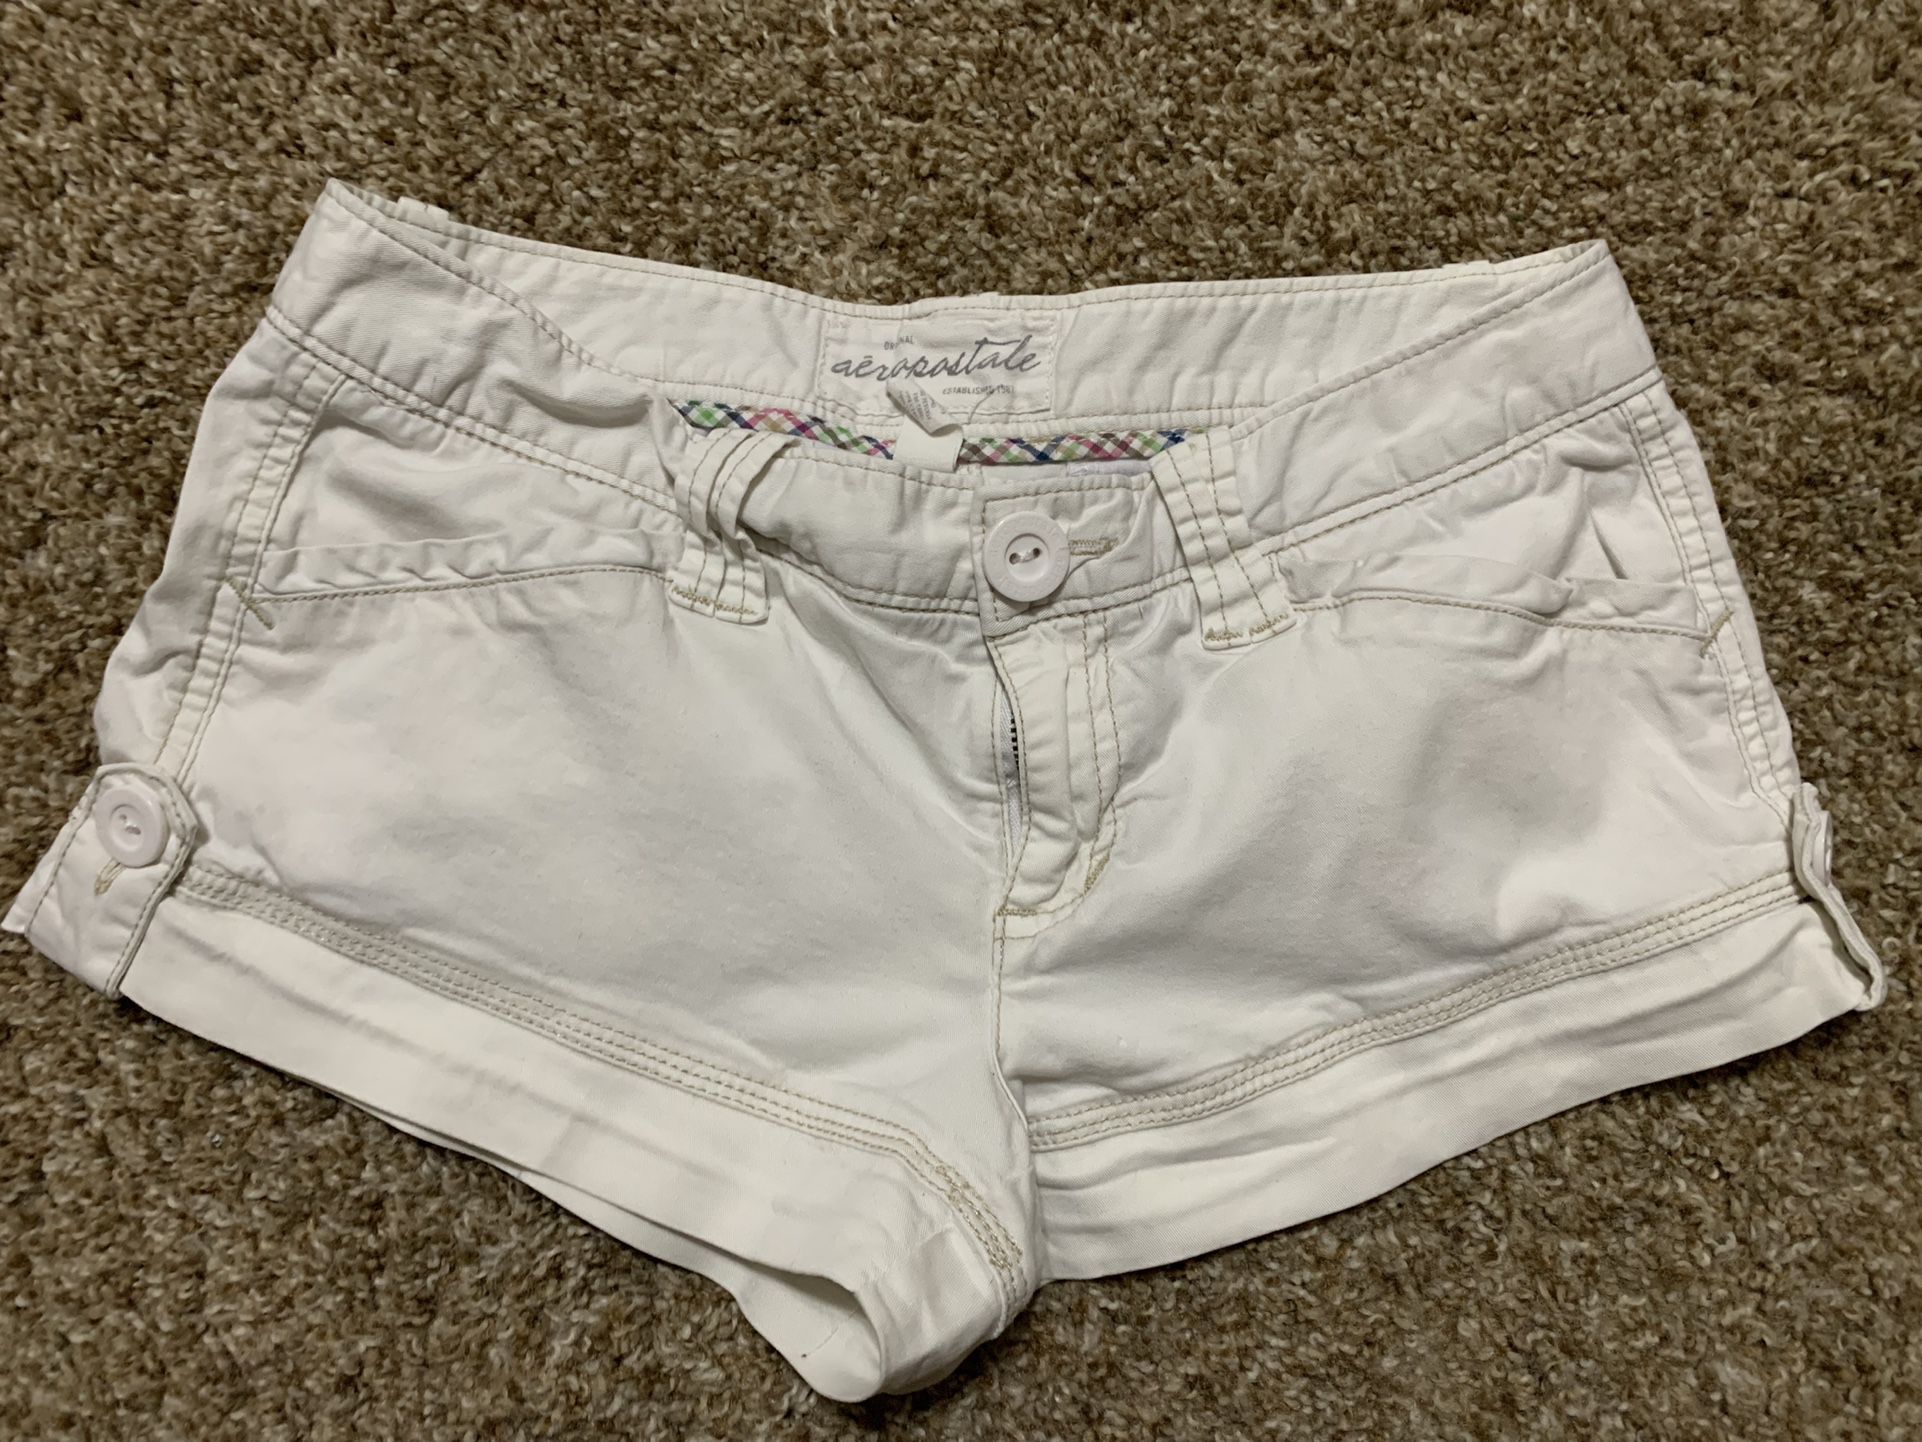 AéRopostale Shorty shorts size 5/6